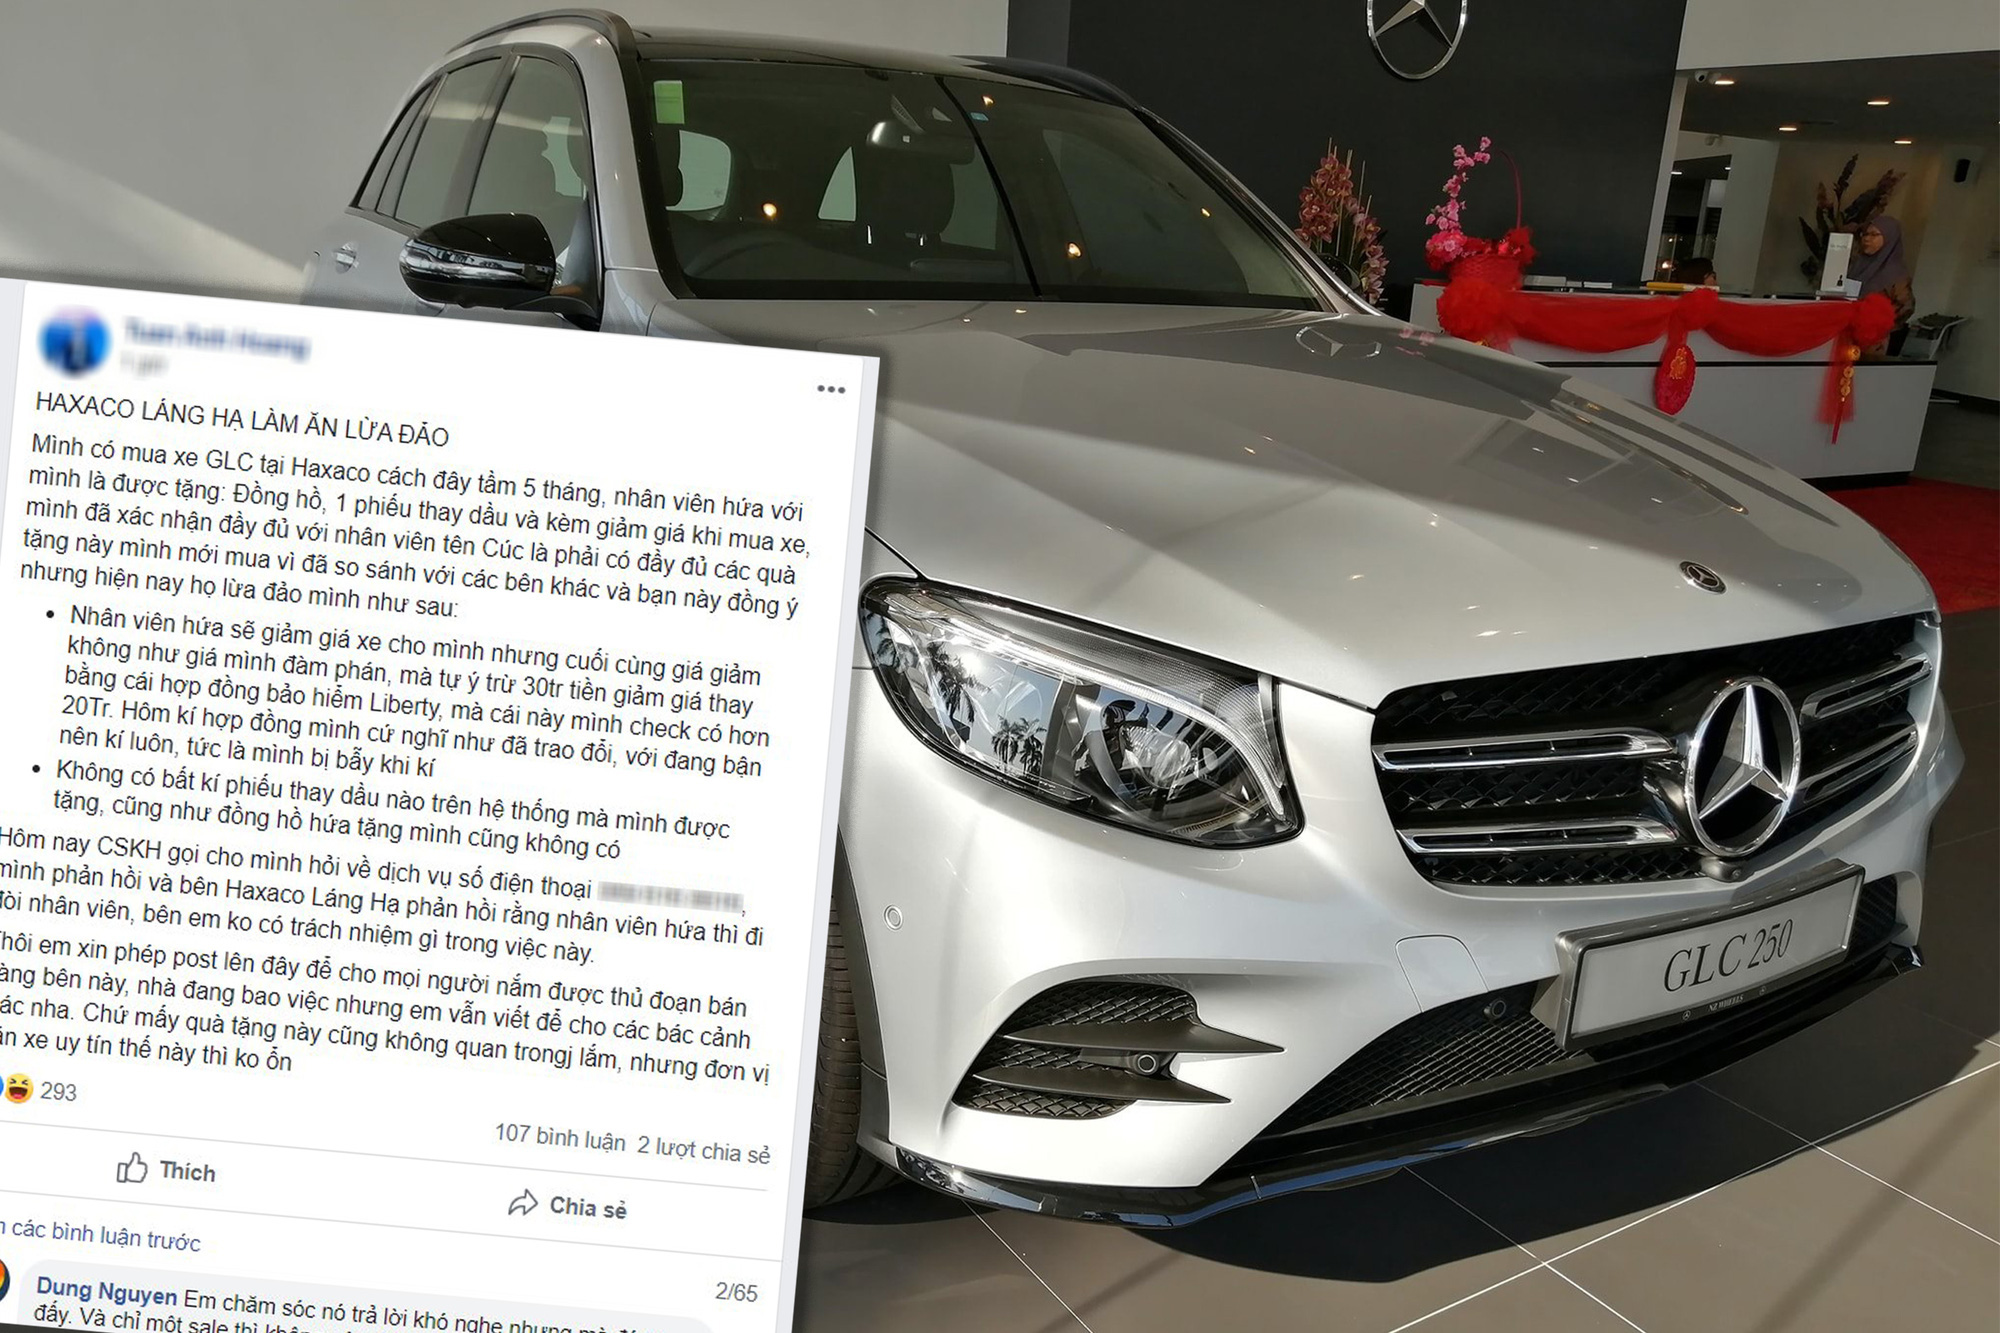 Bị khách tố 'lừa đảo', sales nữ của Mercedes-Benz Haxaco trần tình nhưng cả hai đều gây tranh cãi